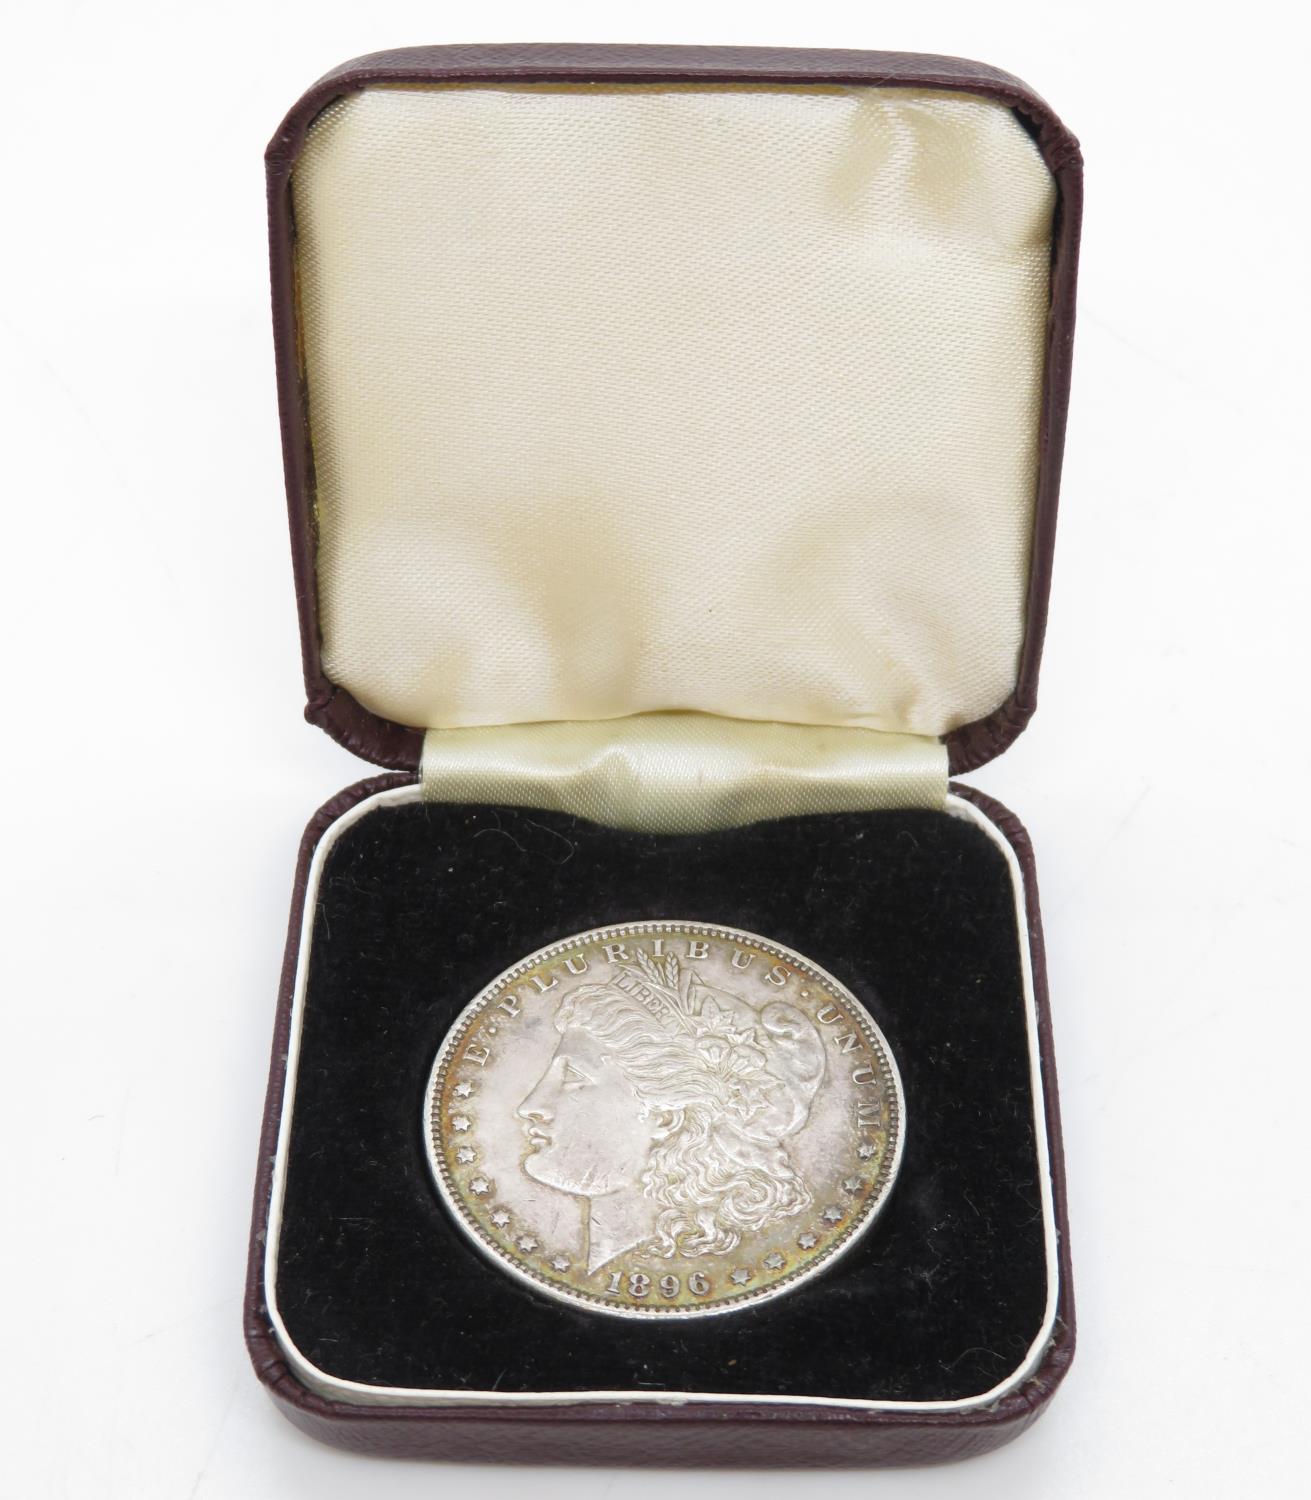 Rare 1896 silver Morgan dollar